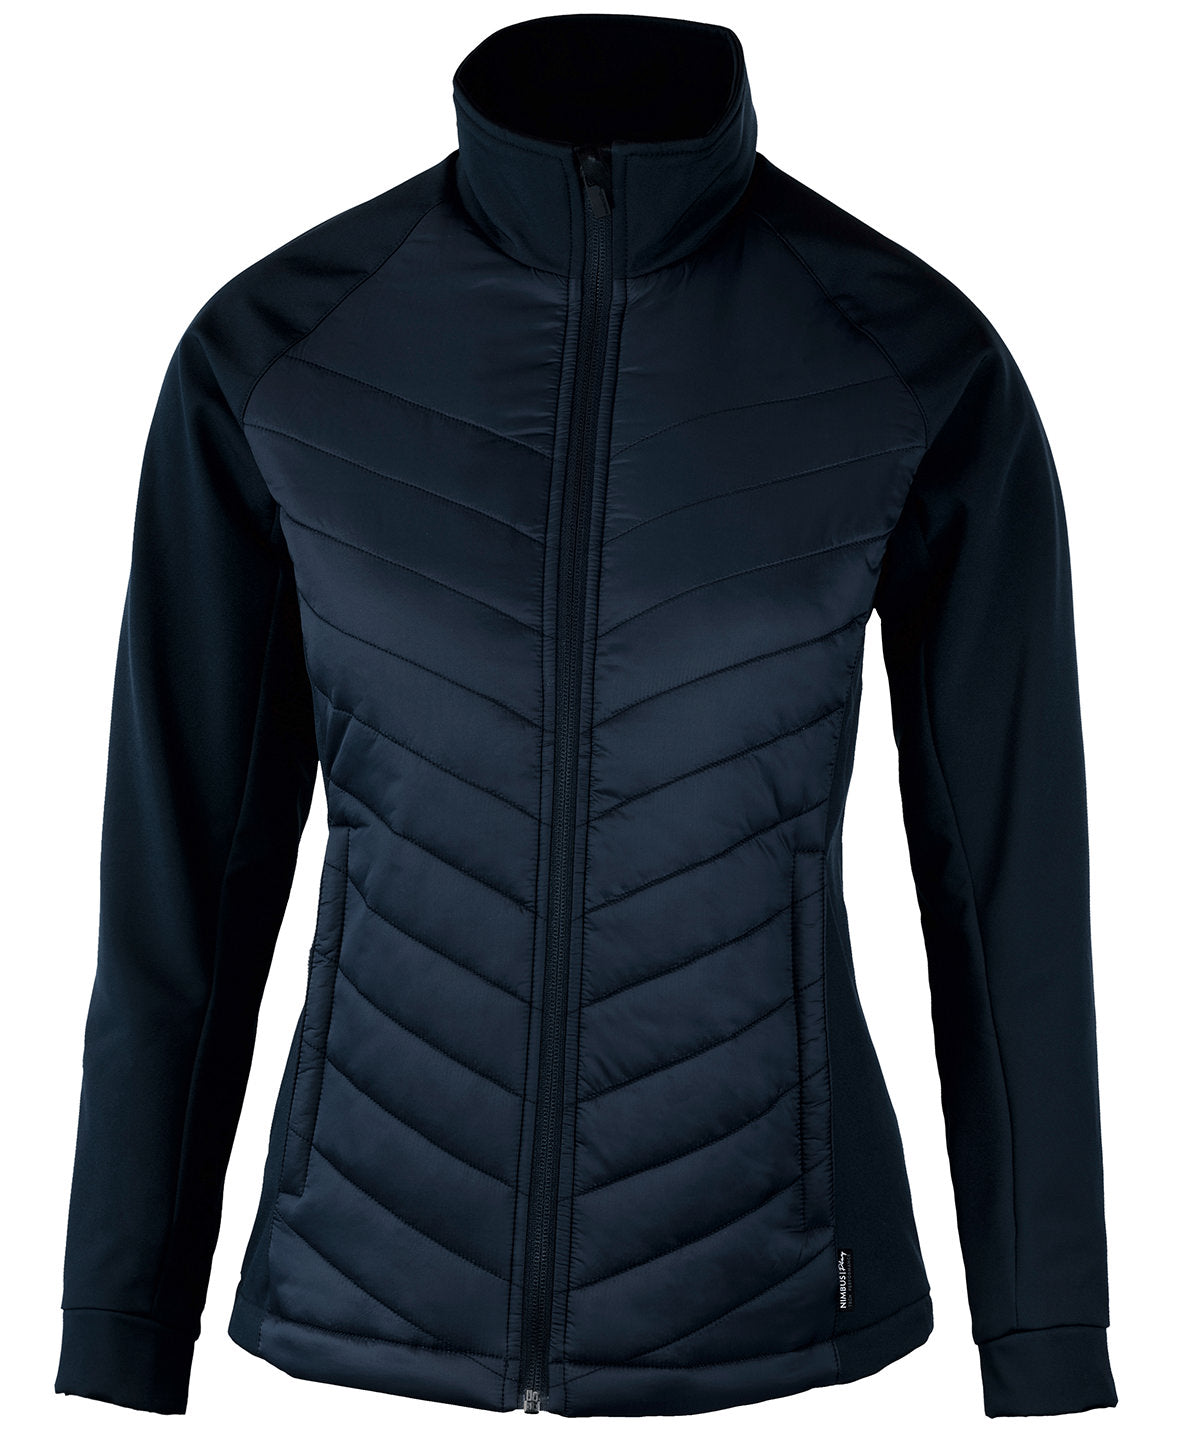 Jakkar - Women’s Bloomsdale – Comfortable Hybrid Jacket